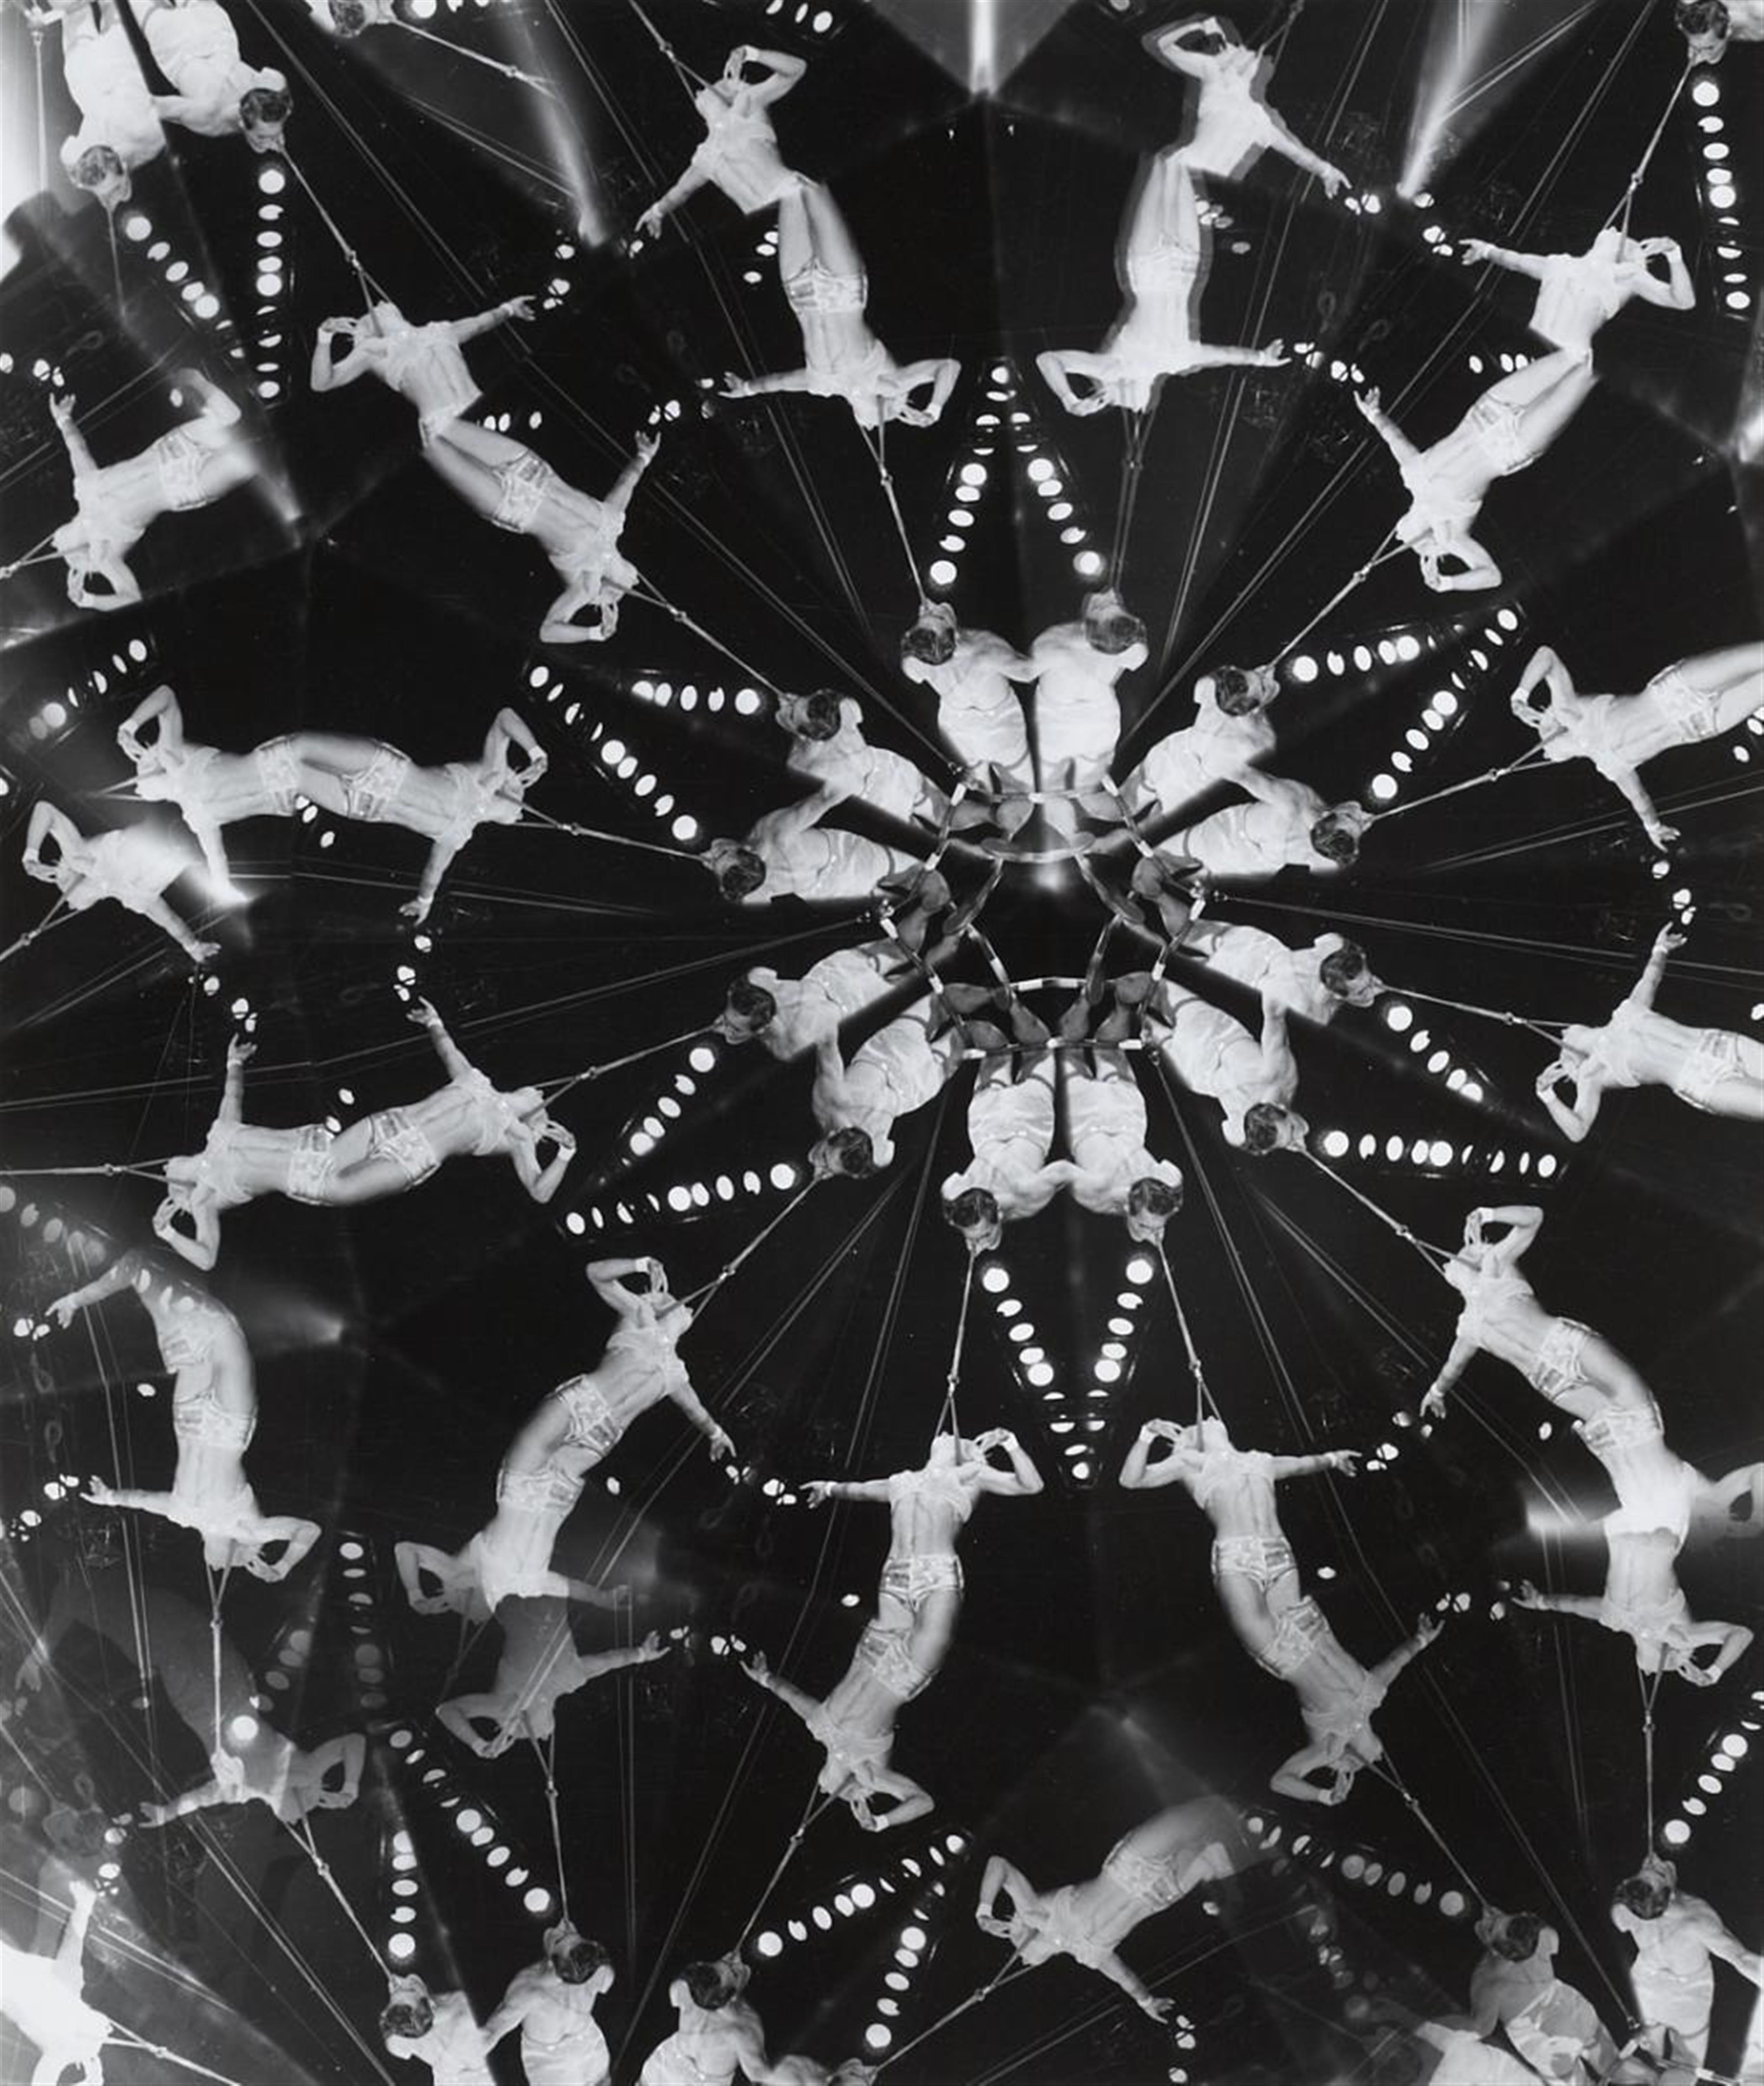 Weegee (Arthur Fellig) - Untitled (Circus) - image-2